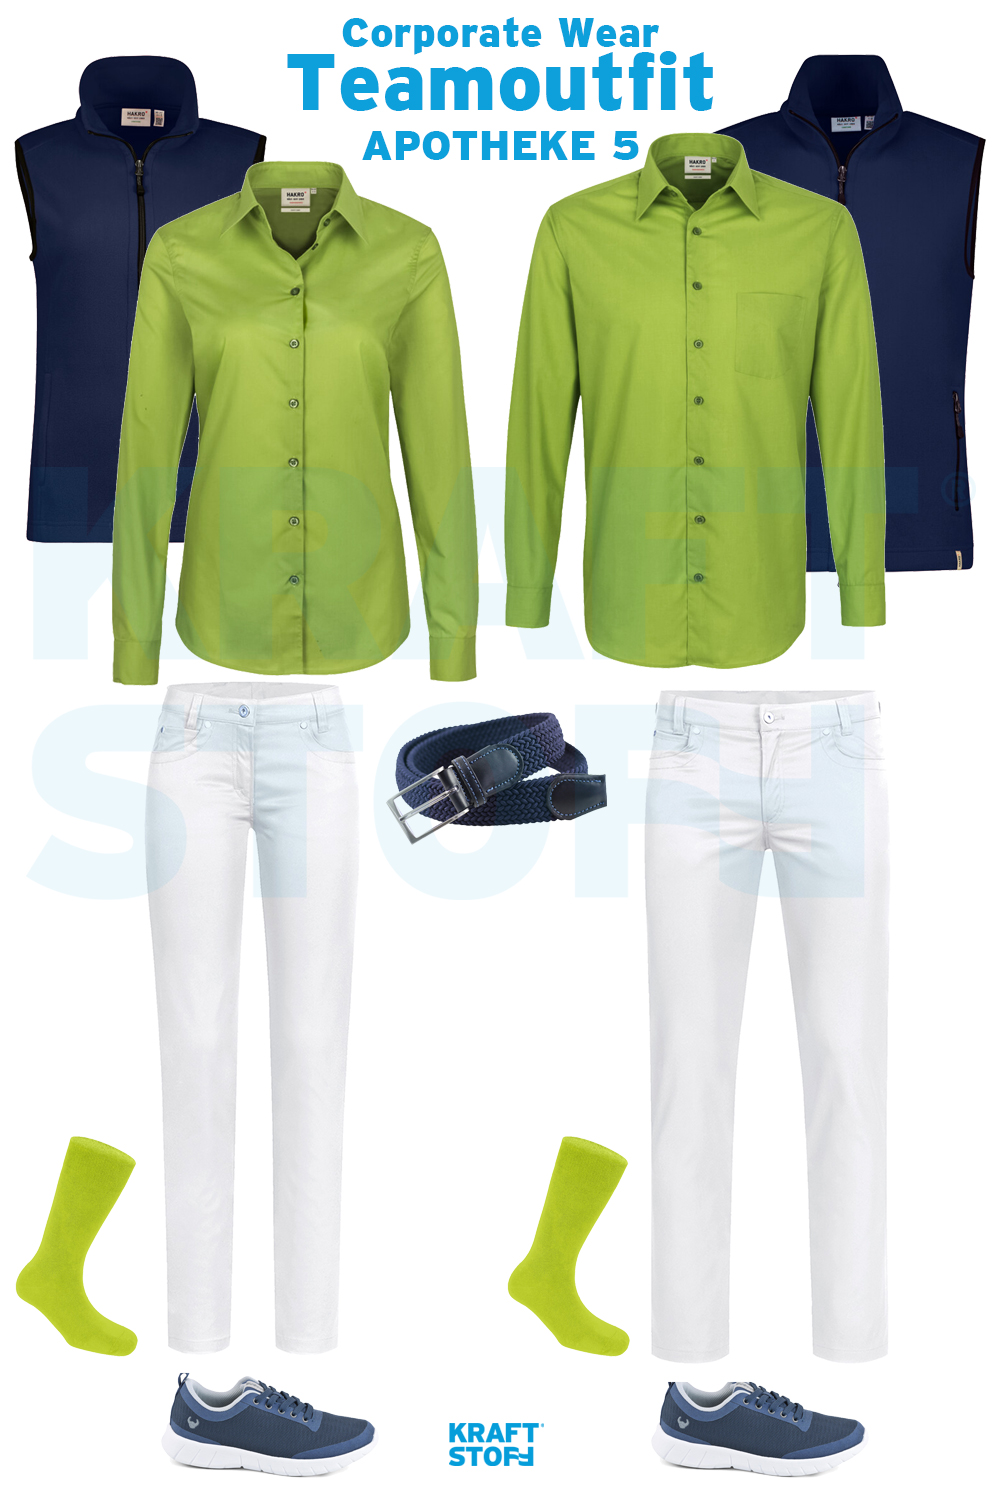 Berufsbekleidung Apotheke, Teamoutfit, grüne Hemden und Blusen, blaue Softshellweste, weiße Hosen, blaue Sneaker, grüne Socken, blauer Gürtel